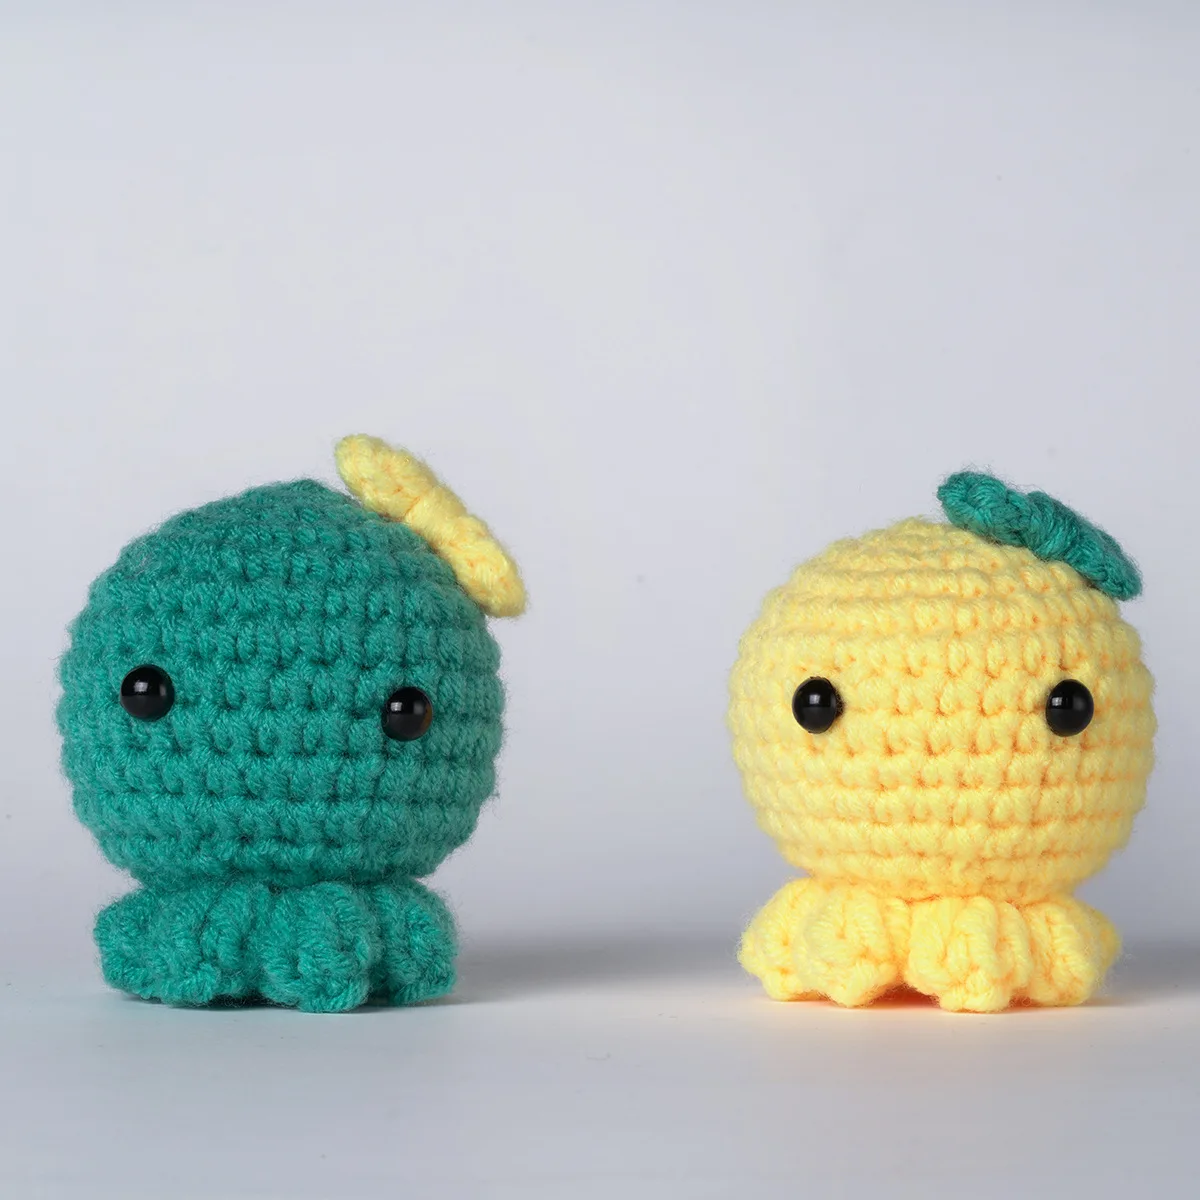 Custom Crochet Animal Kit DIY Crochet Starter Kit for Beginners Adults and Kids